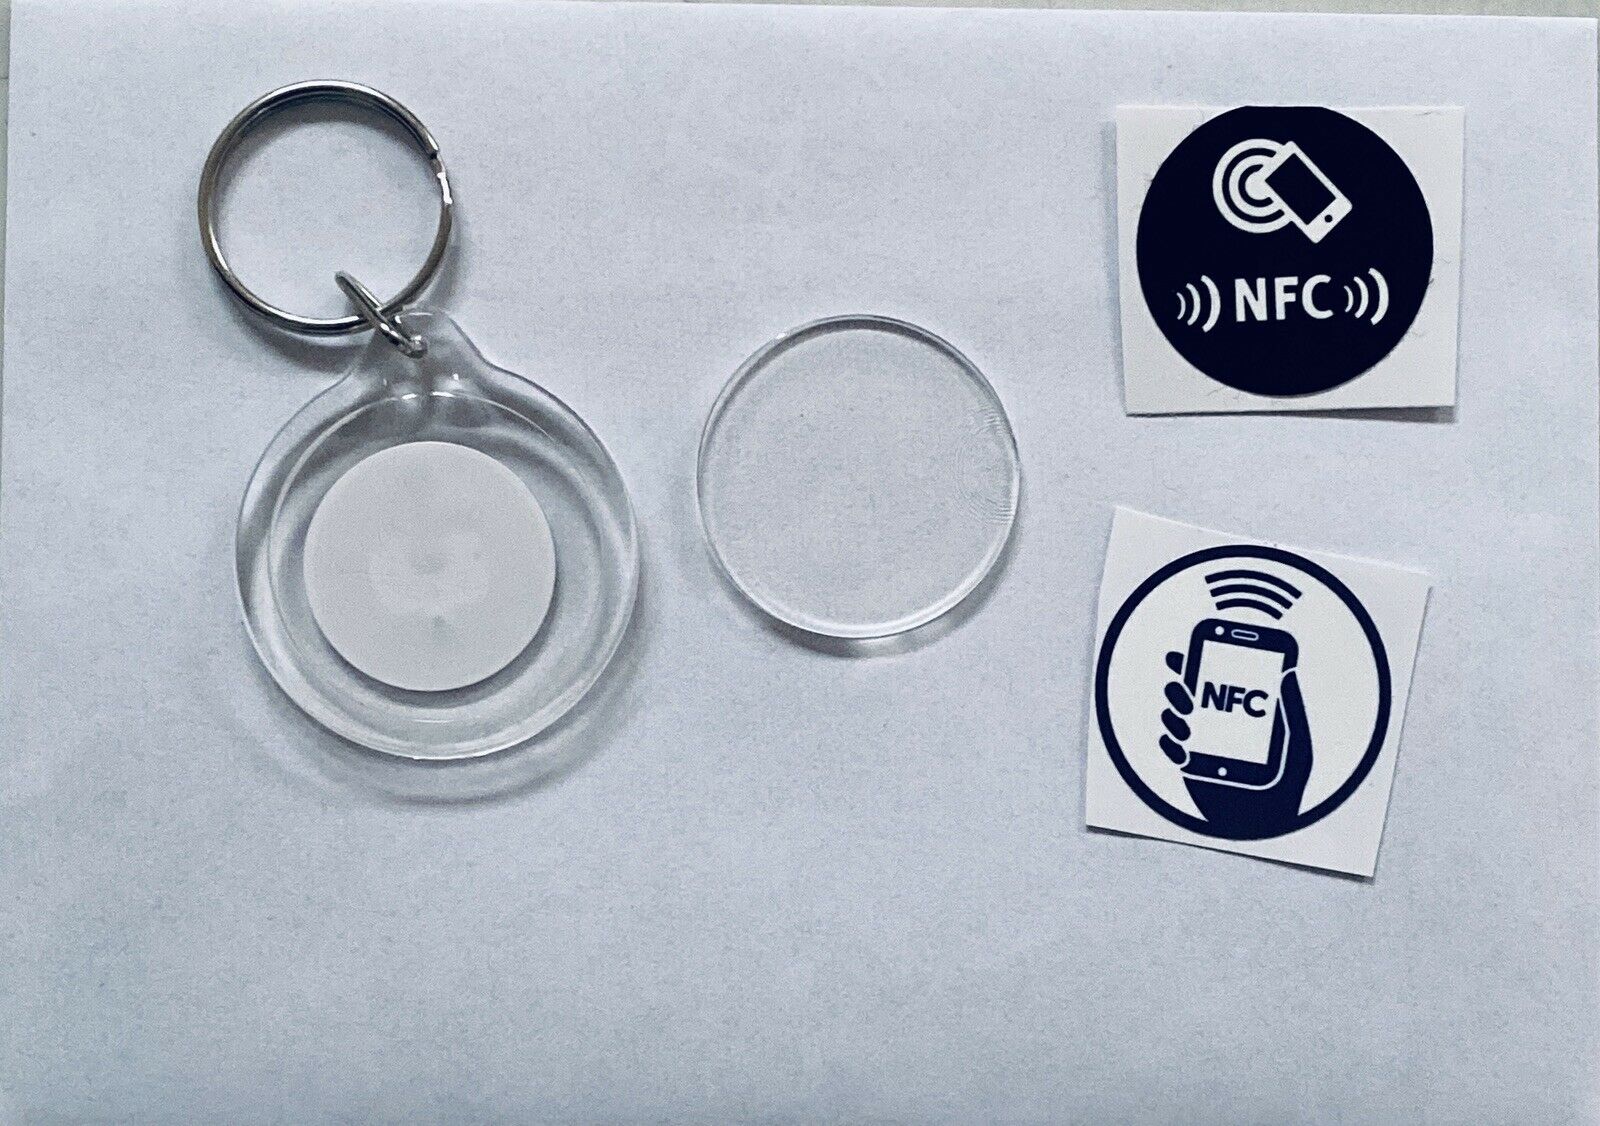 50 Stk. NFC-NTag215, Schlüsselanhänger zur Selbstgestaltung auch für Amiboo geeignet